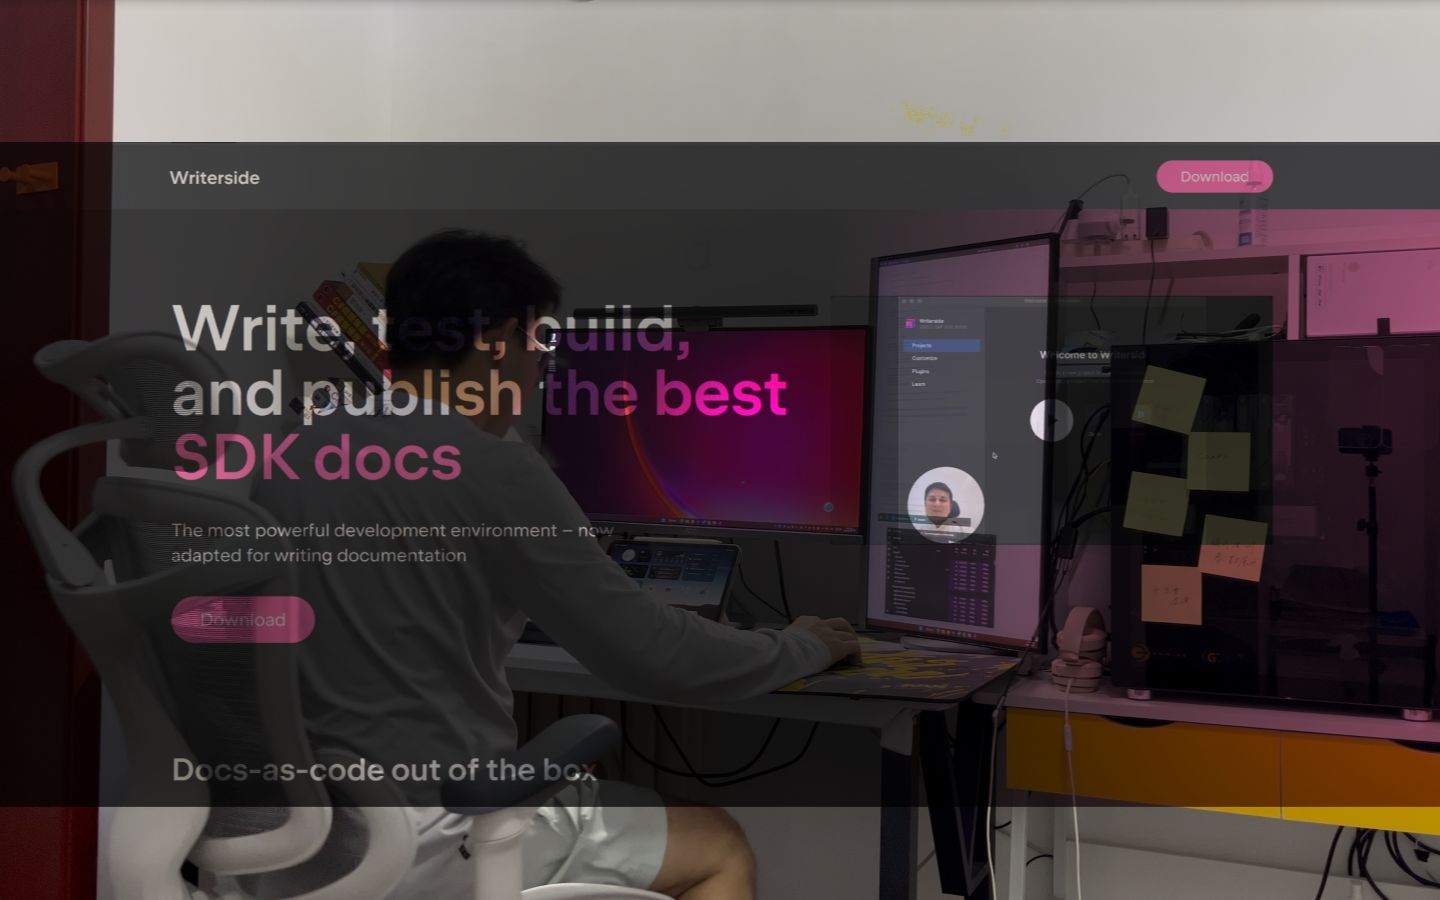 尝鲜JetBrains新产品文档工具Writerside!